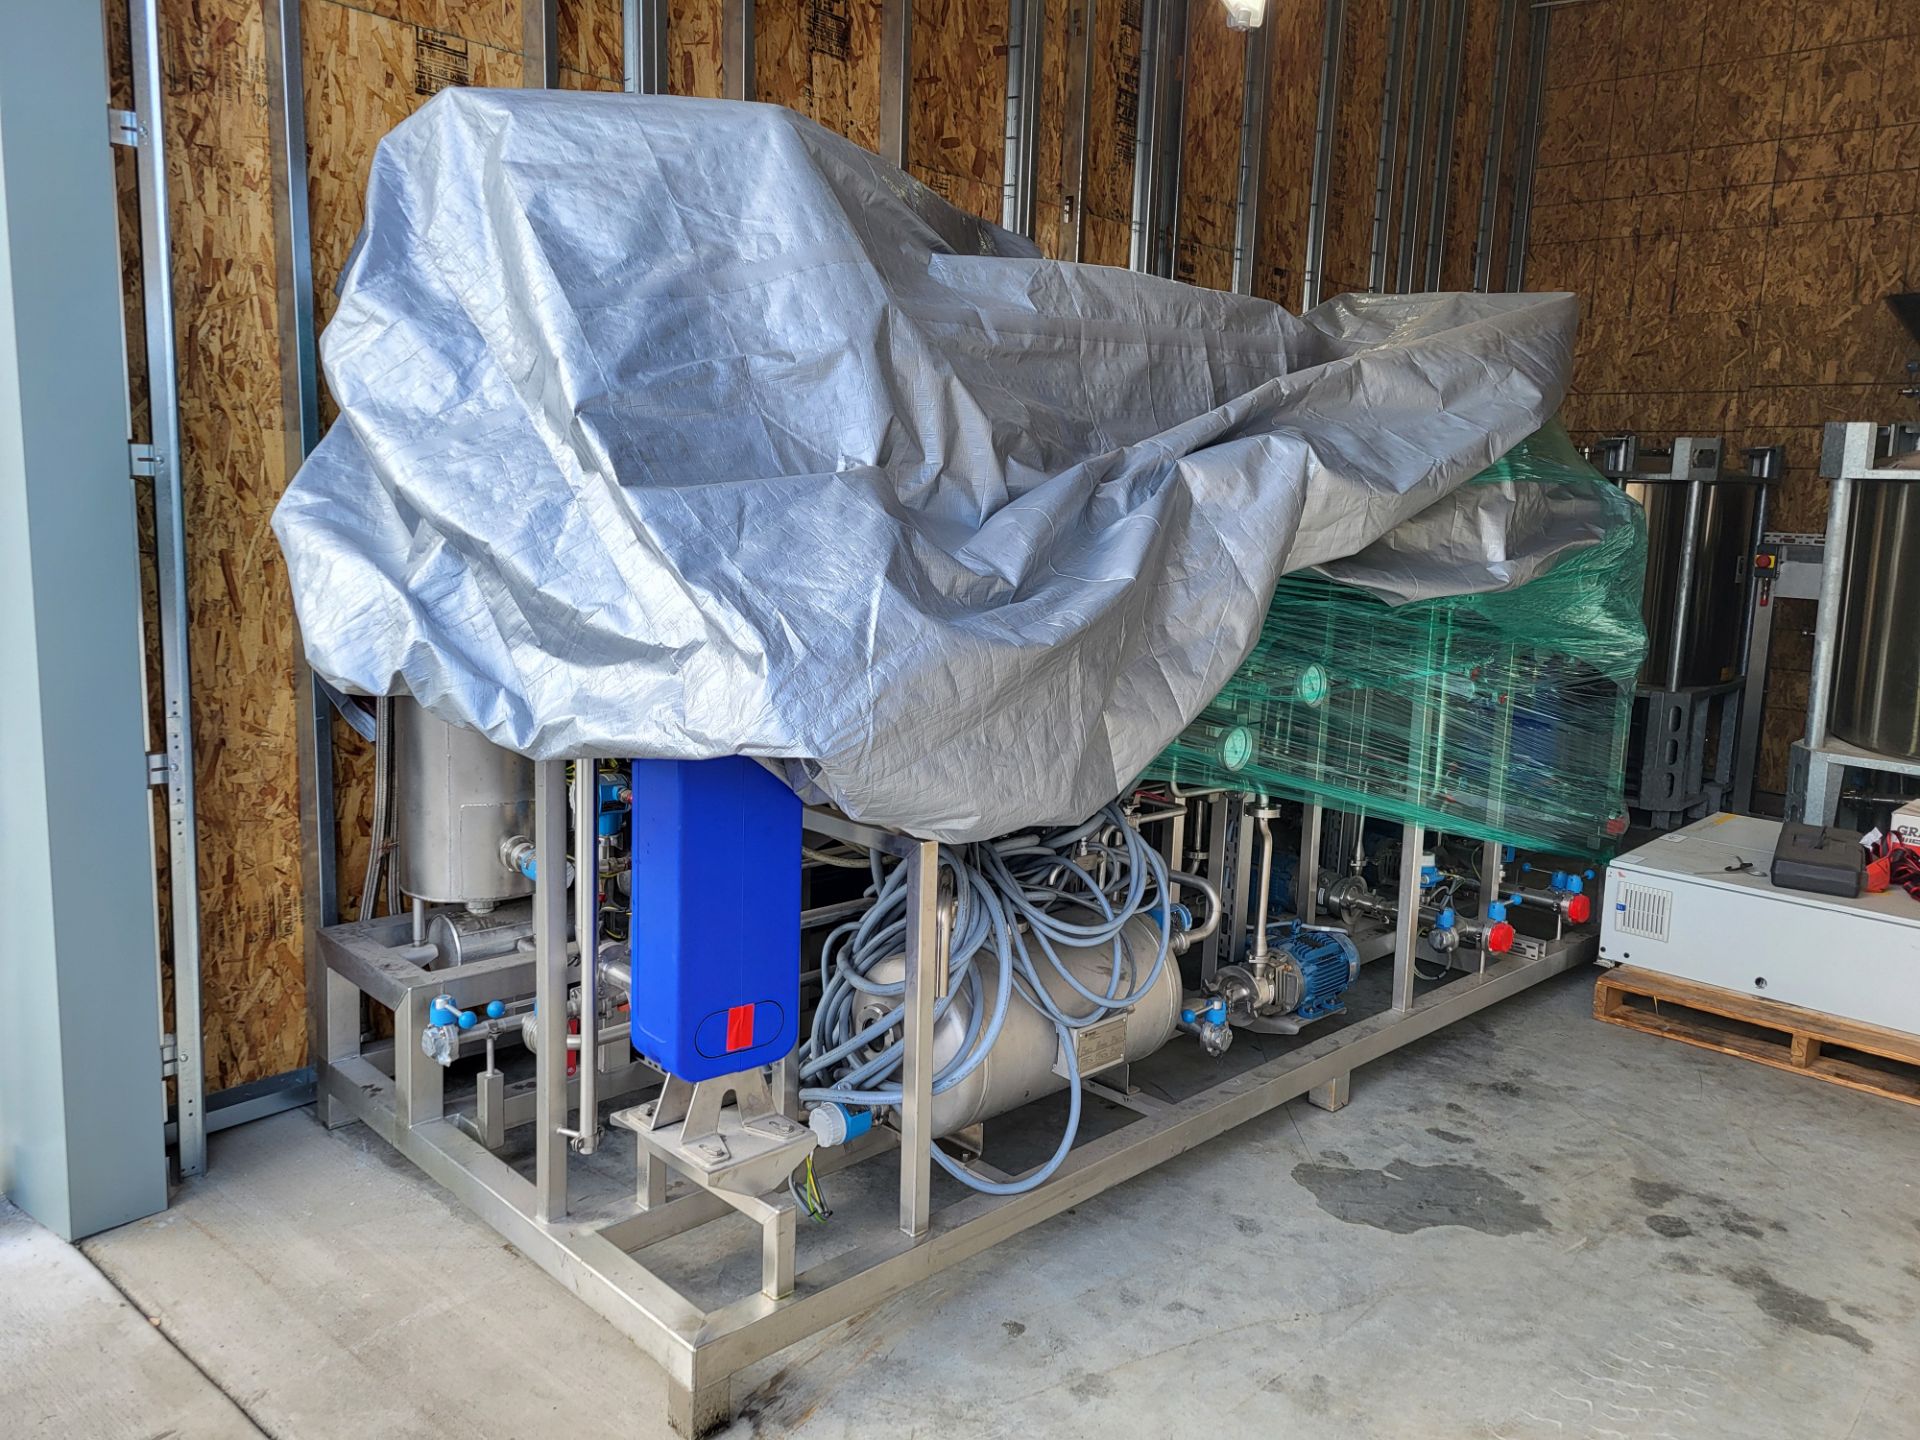 Ethanol Extraction System, Shelton, WA - Image 10 of 16